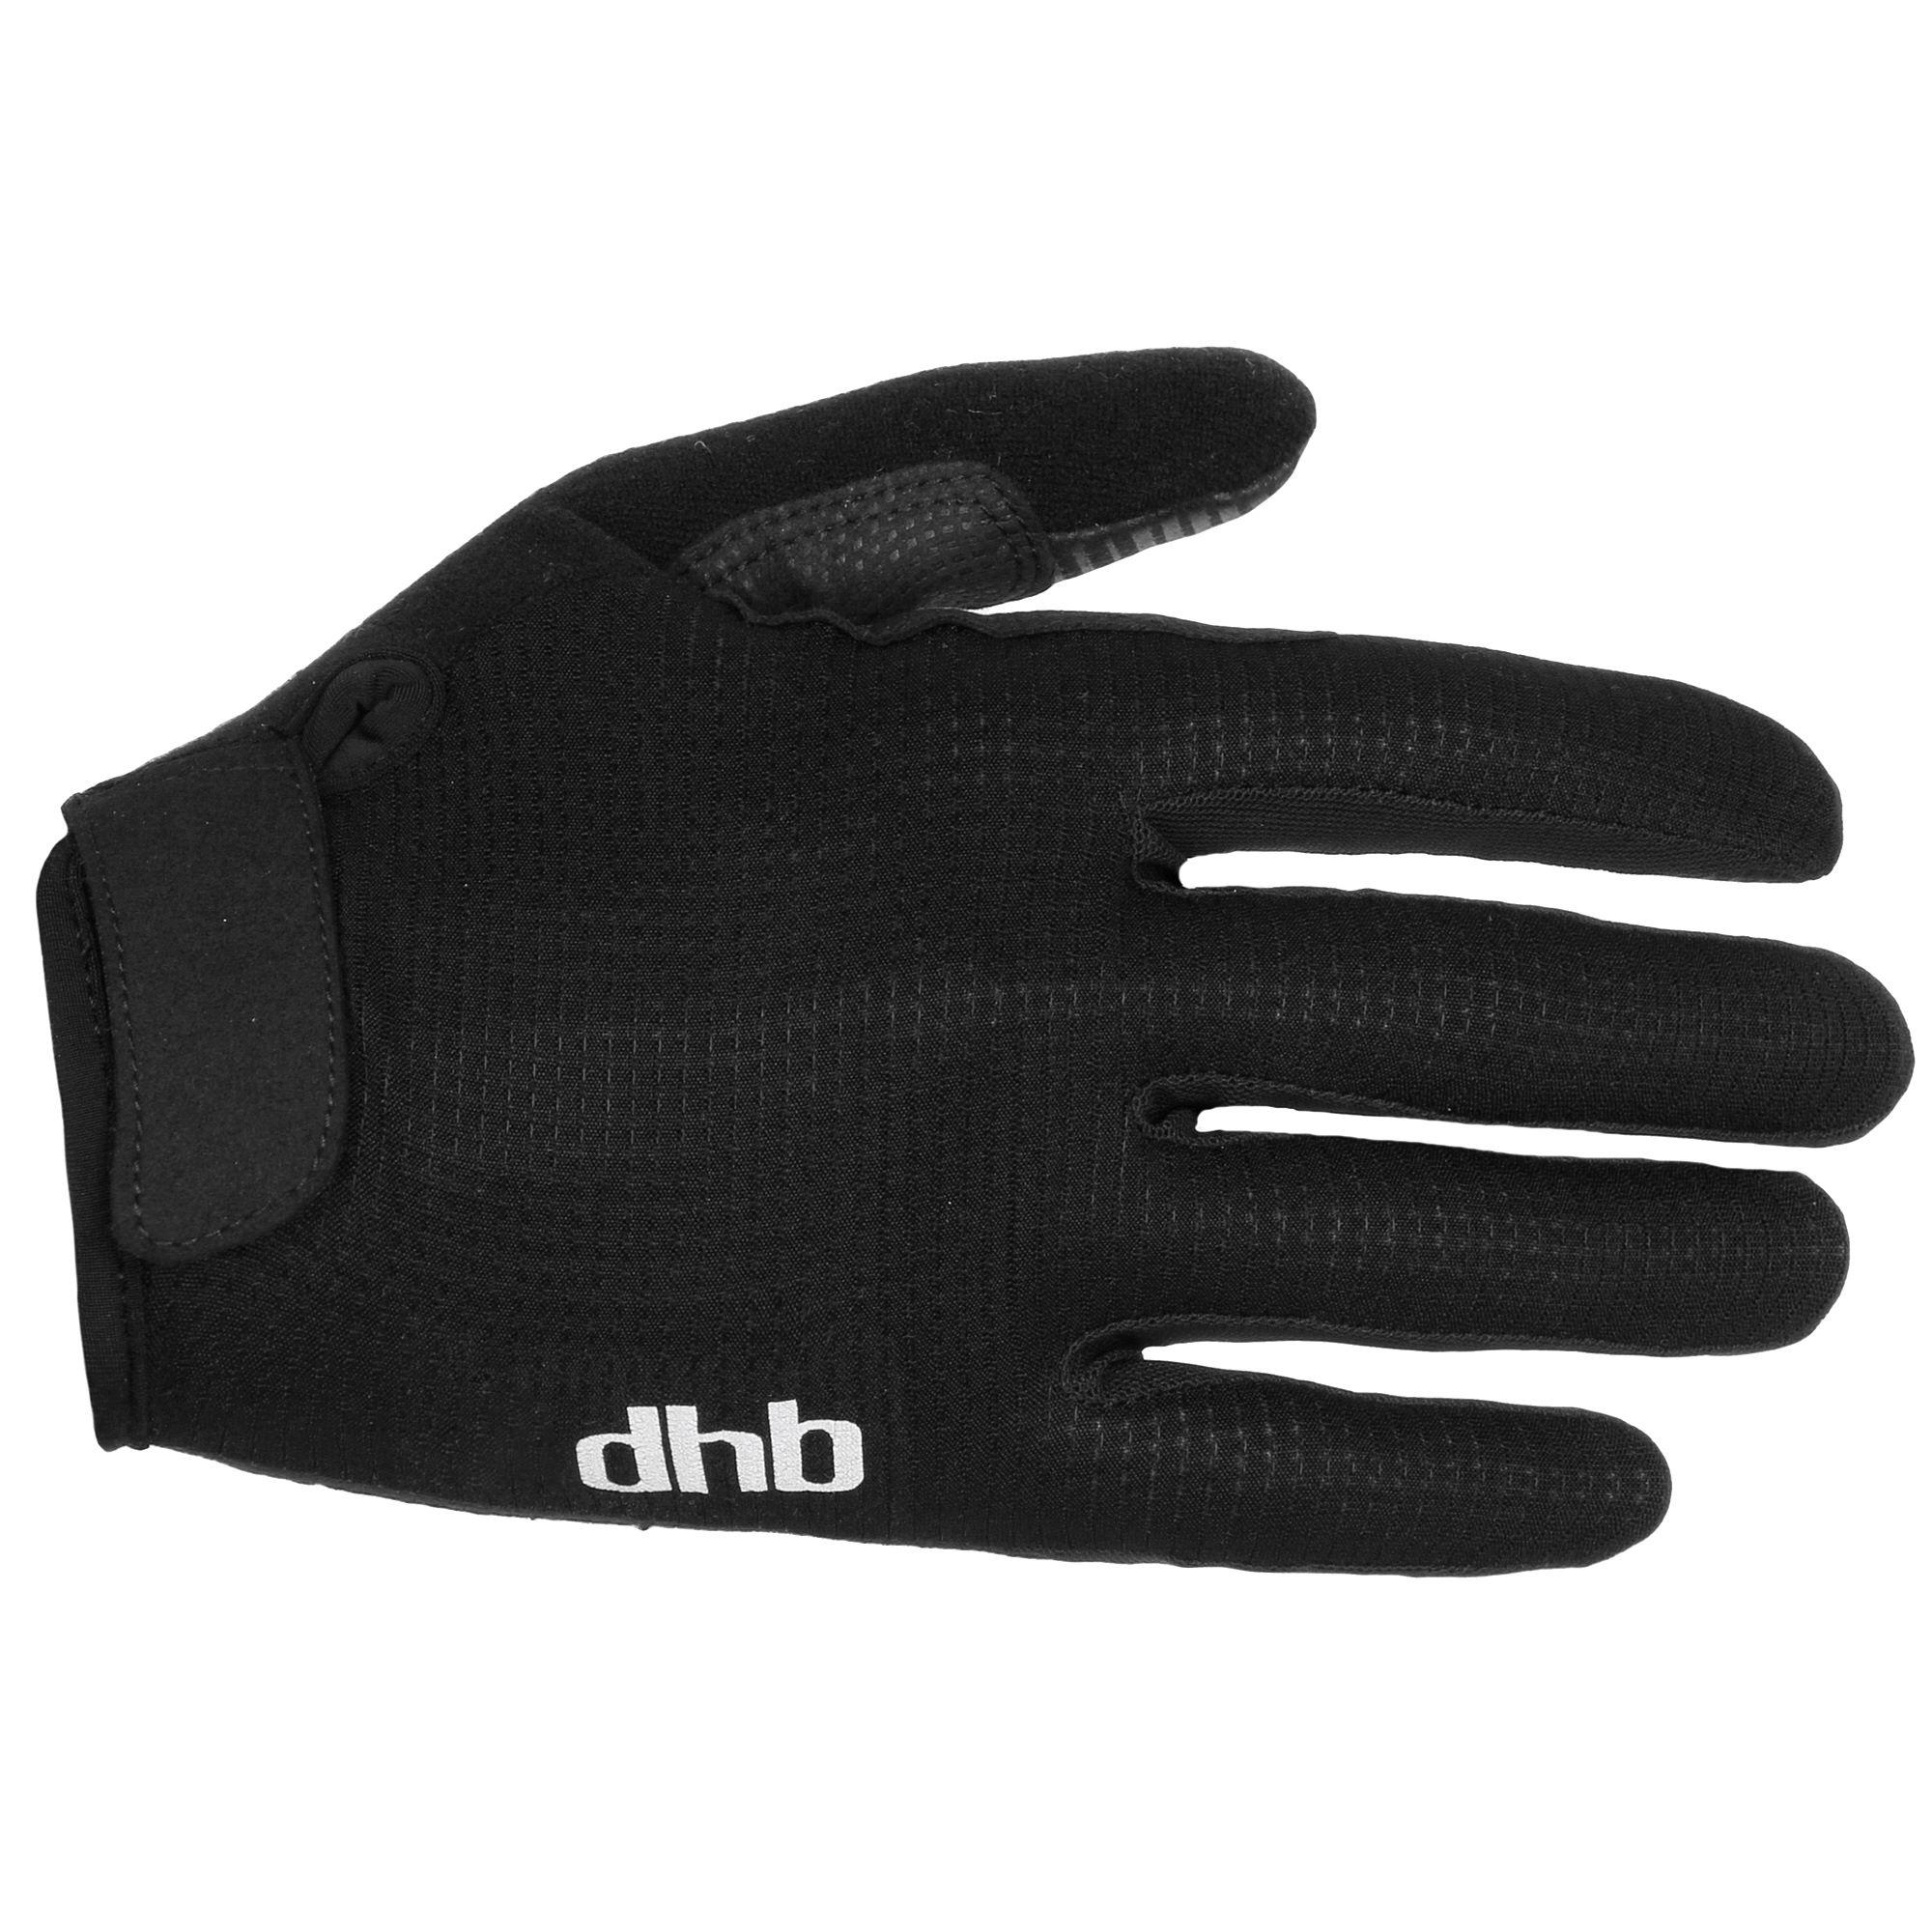 Dhb Lightweight Cycling Gloves  Black